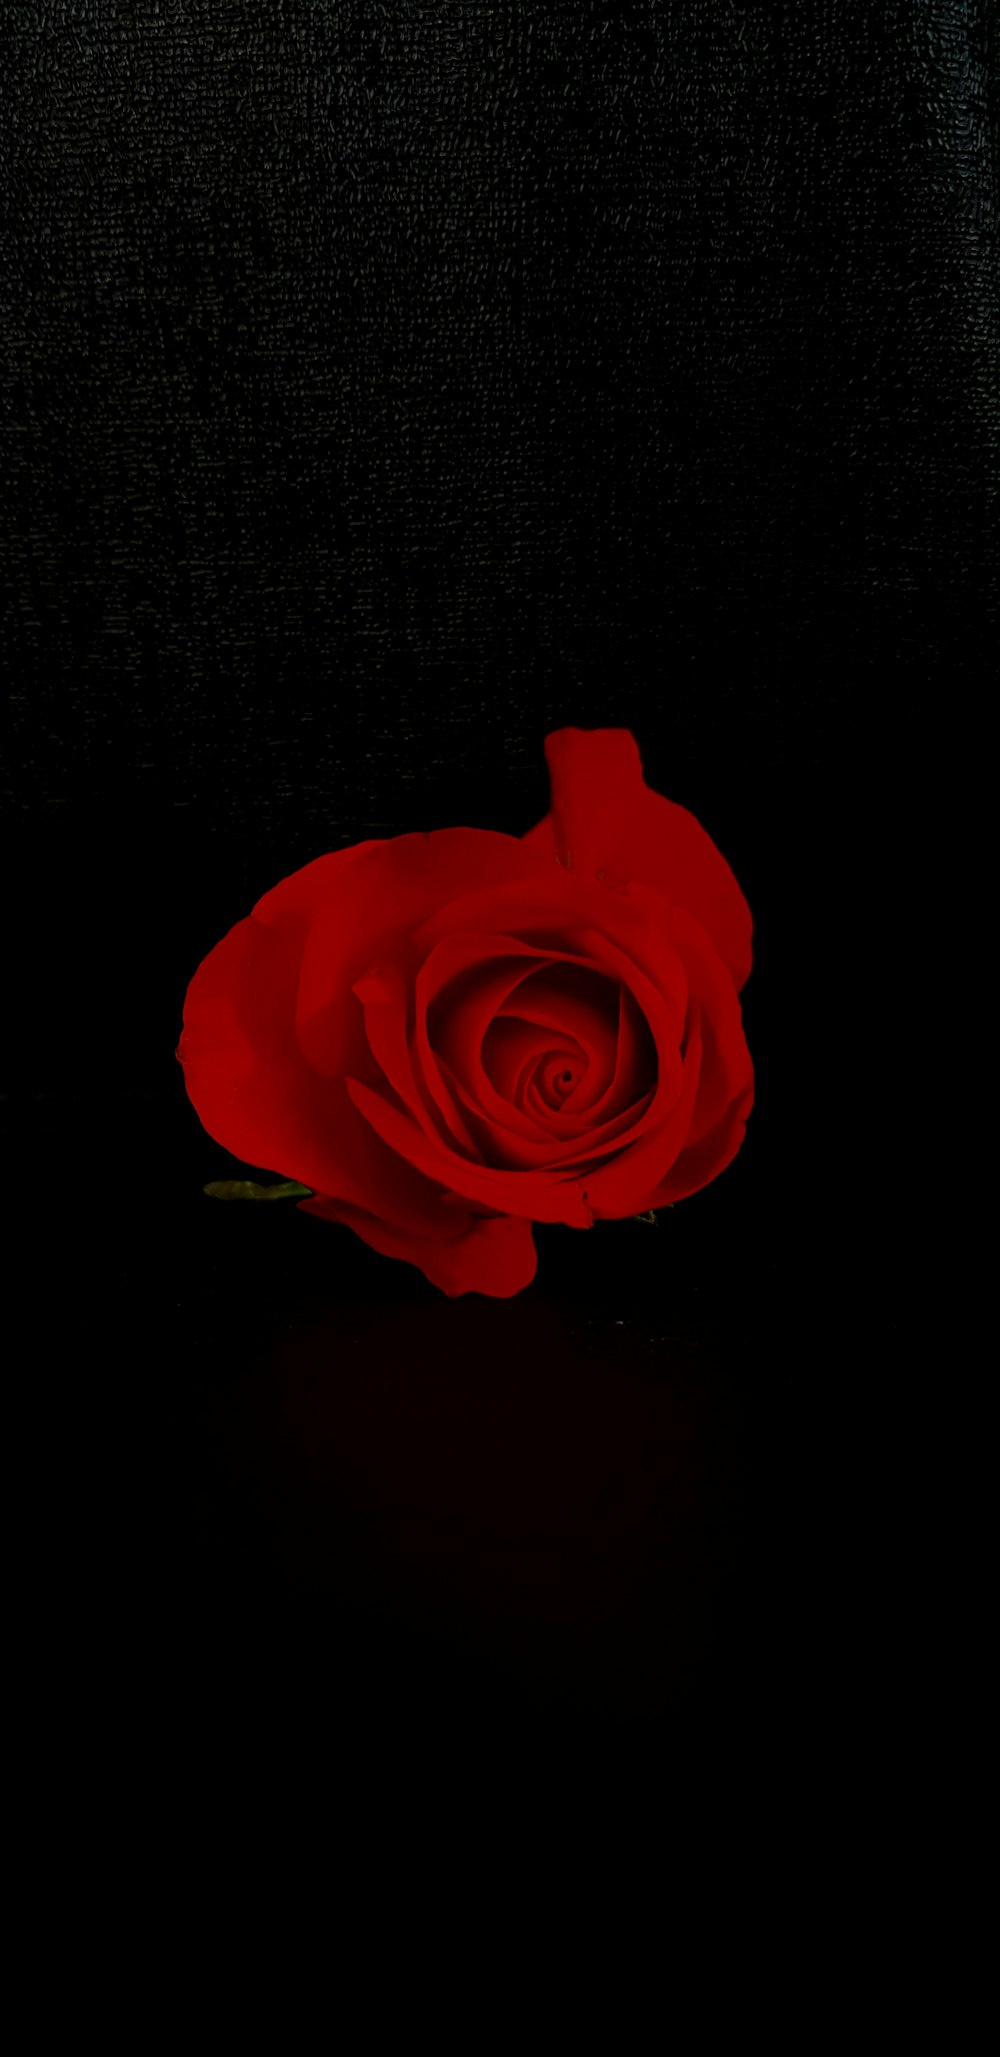 검은 배경에 빨간 장미 꽃